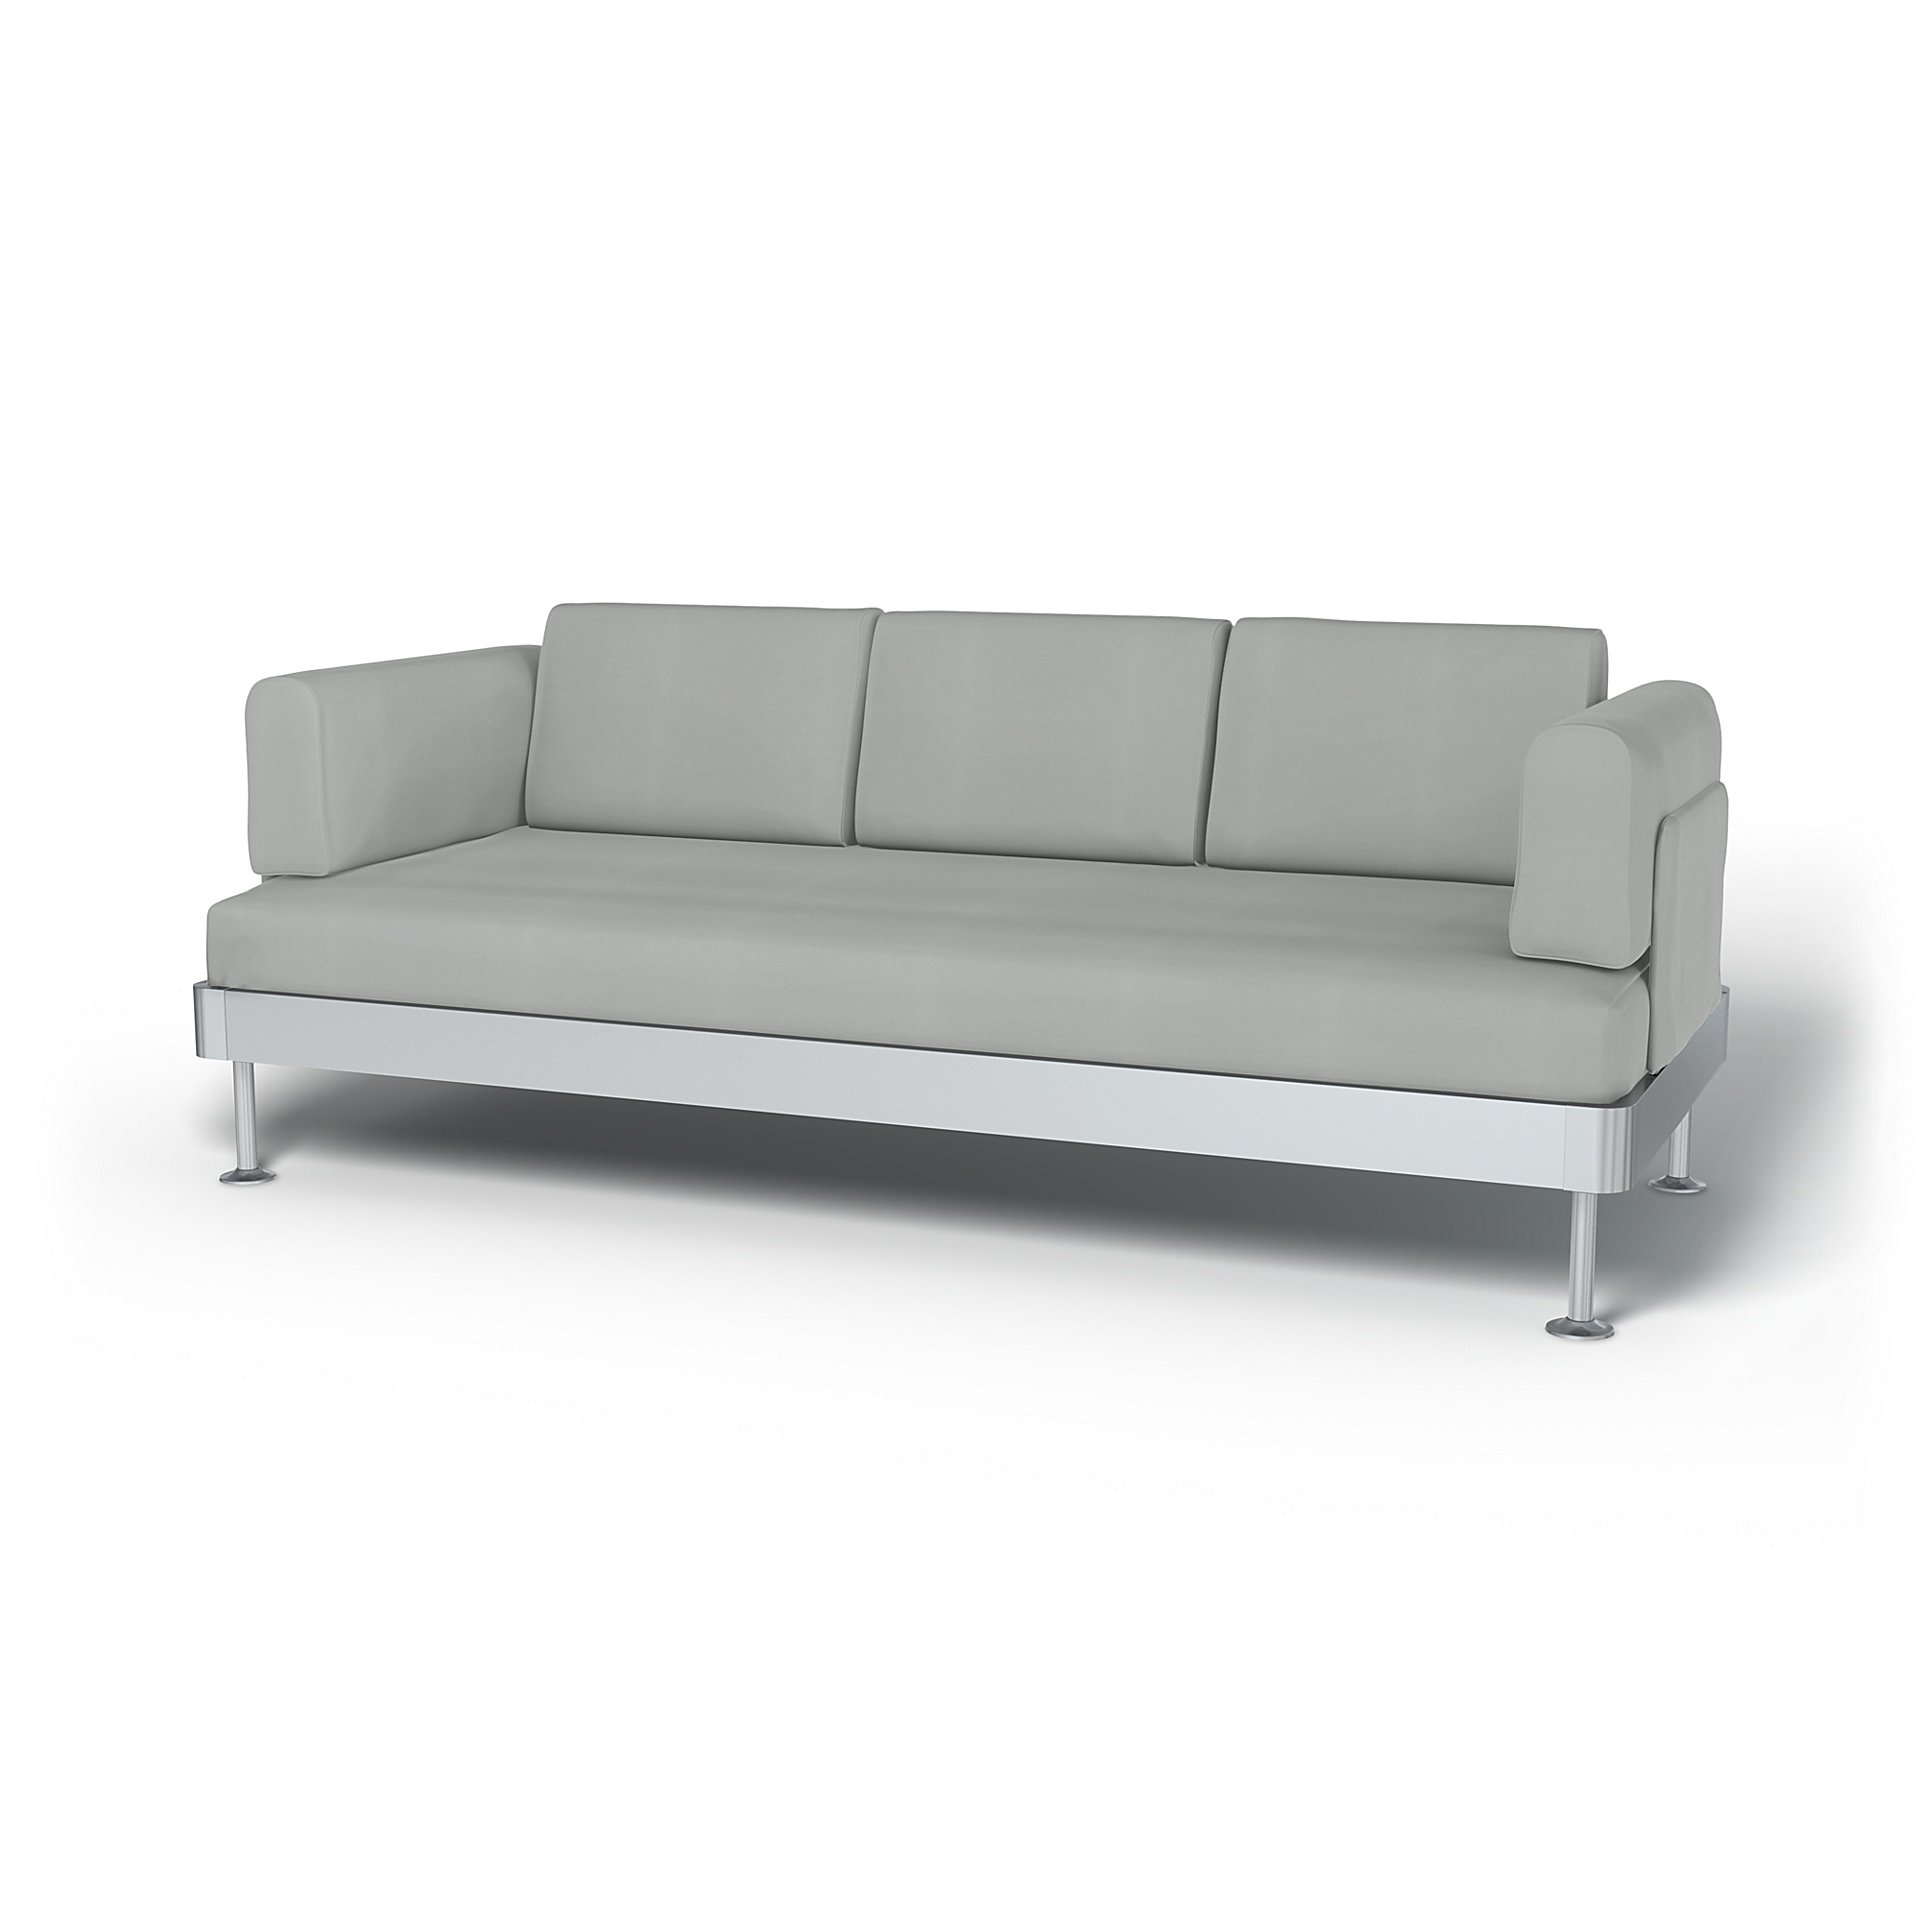 IKEA - Delaktig 3 Seater Sofa Cover, Silver Grey, Cotton - Bemz